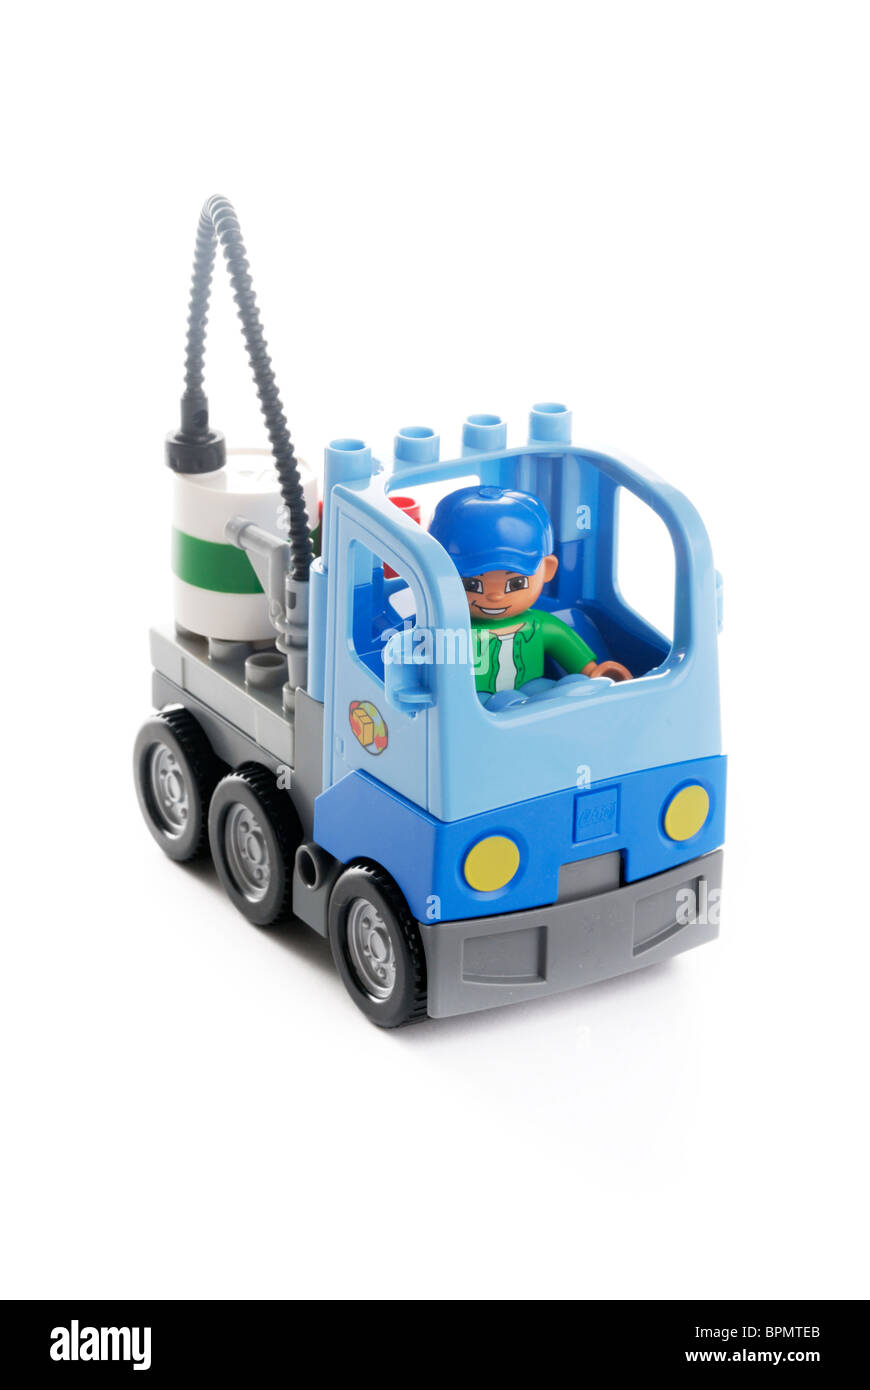 Lego vehicle Stock Photo